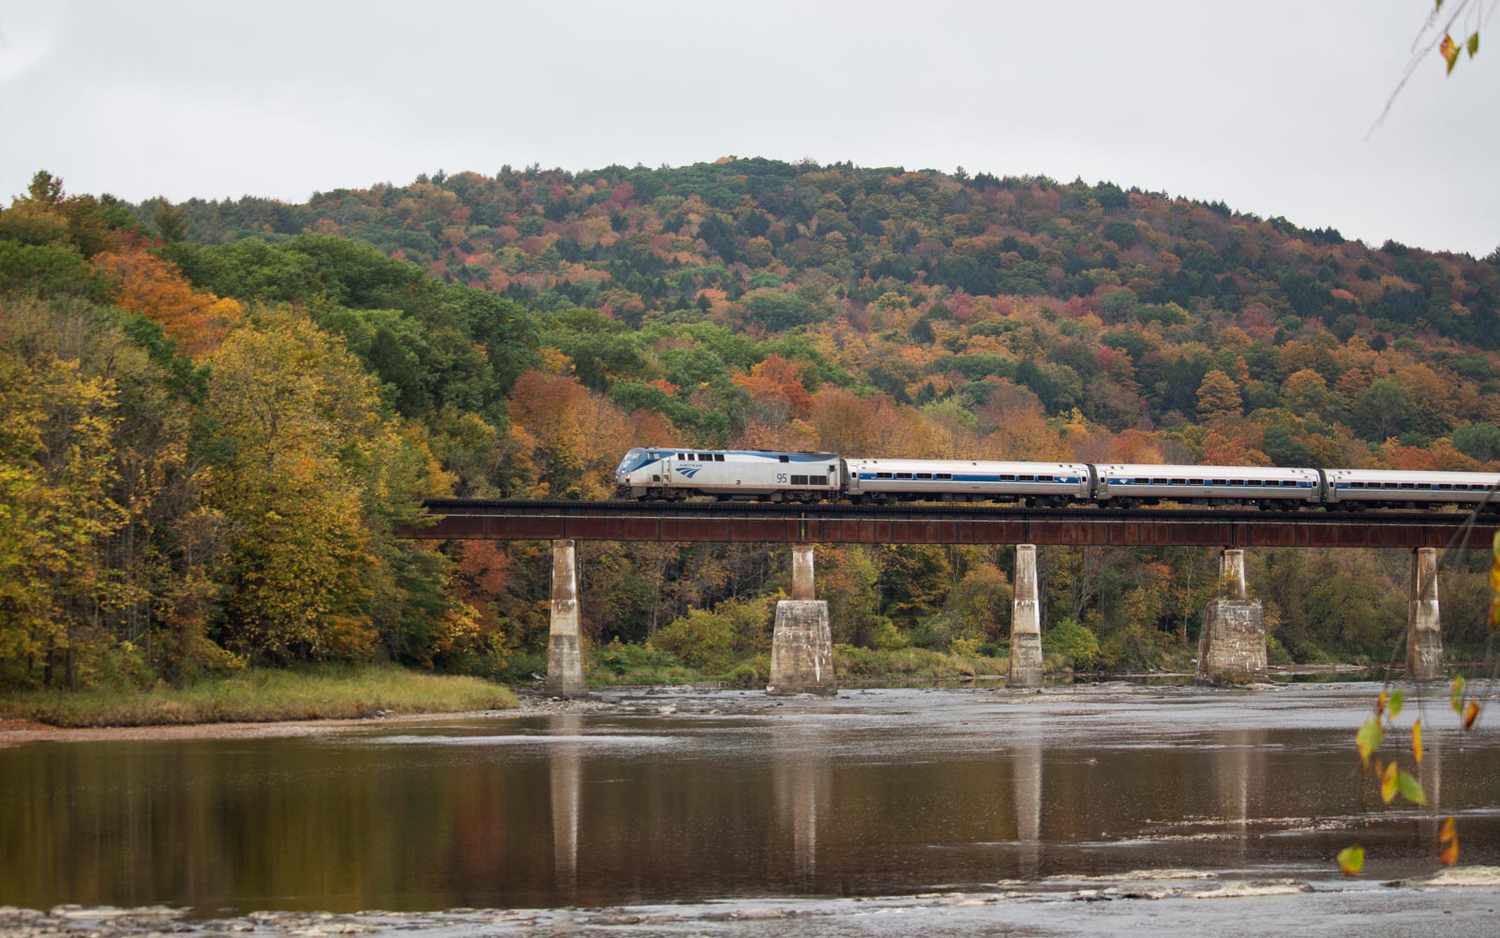 Amtrak Vermonter train